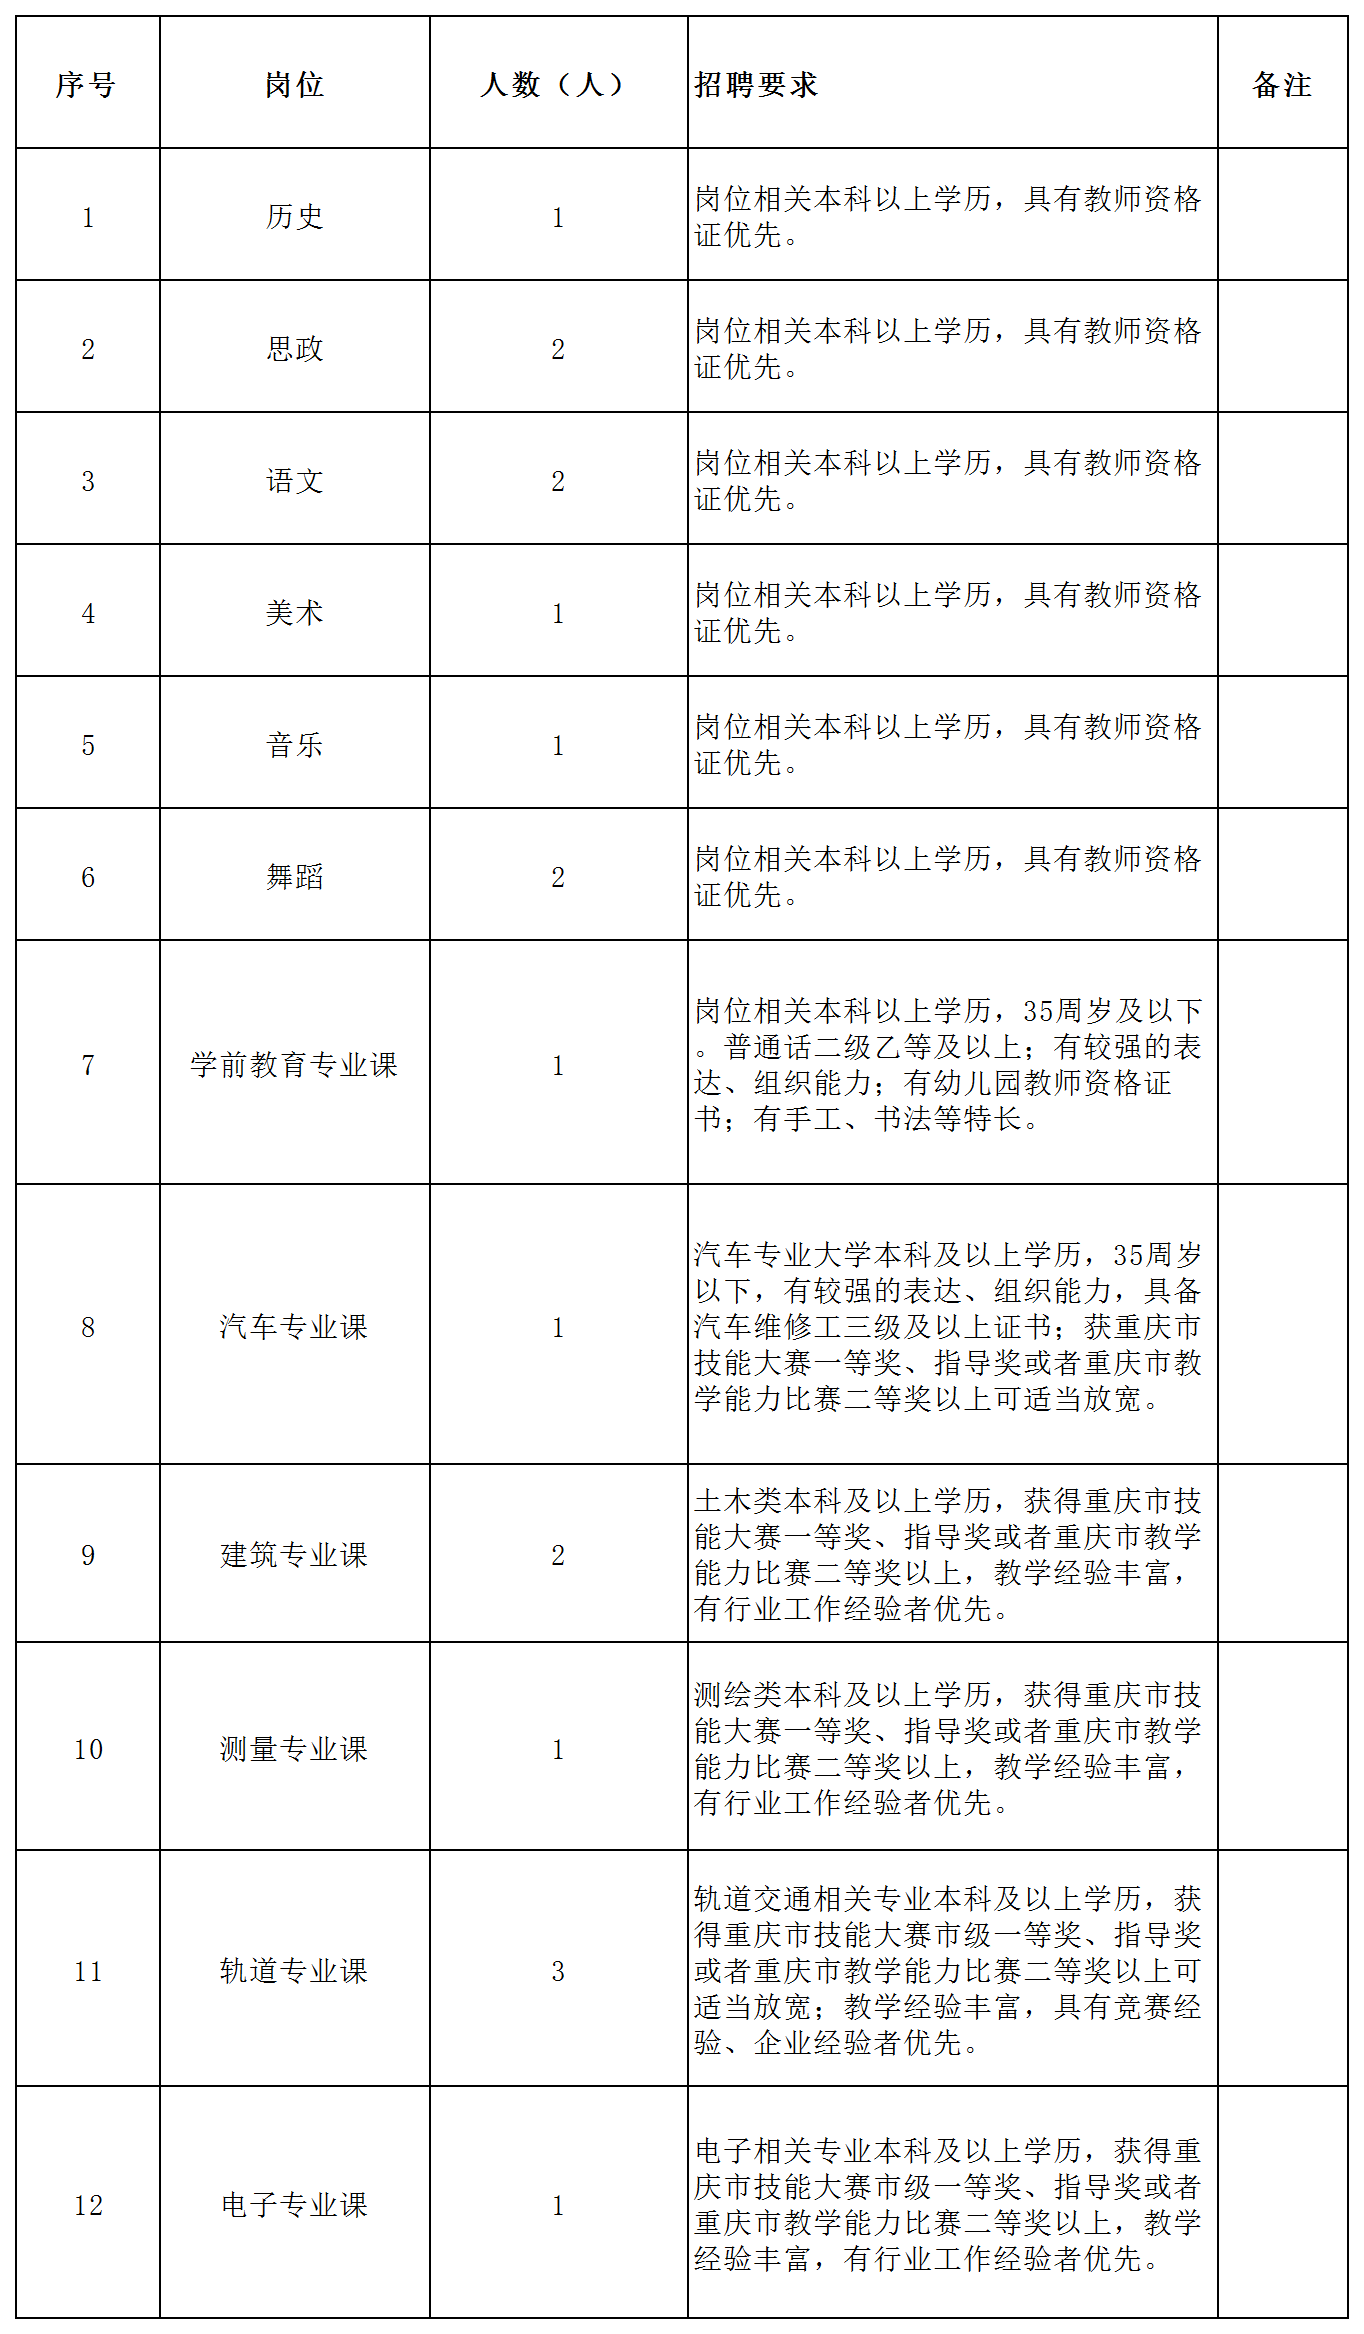 重庆渝北区职业教育中心招聘18名教师!